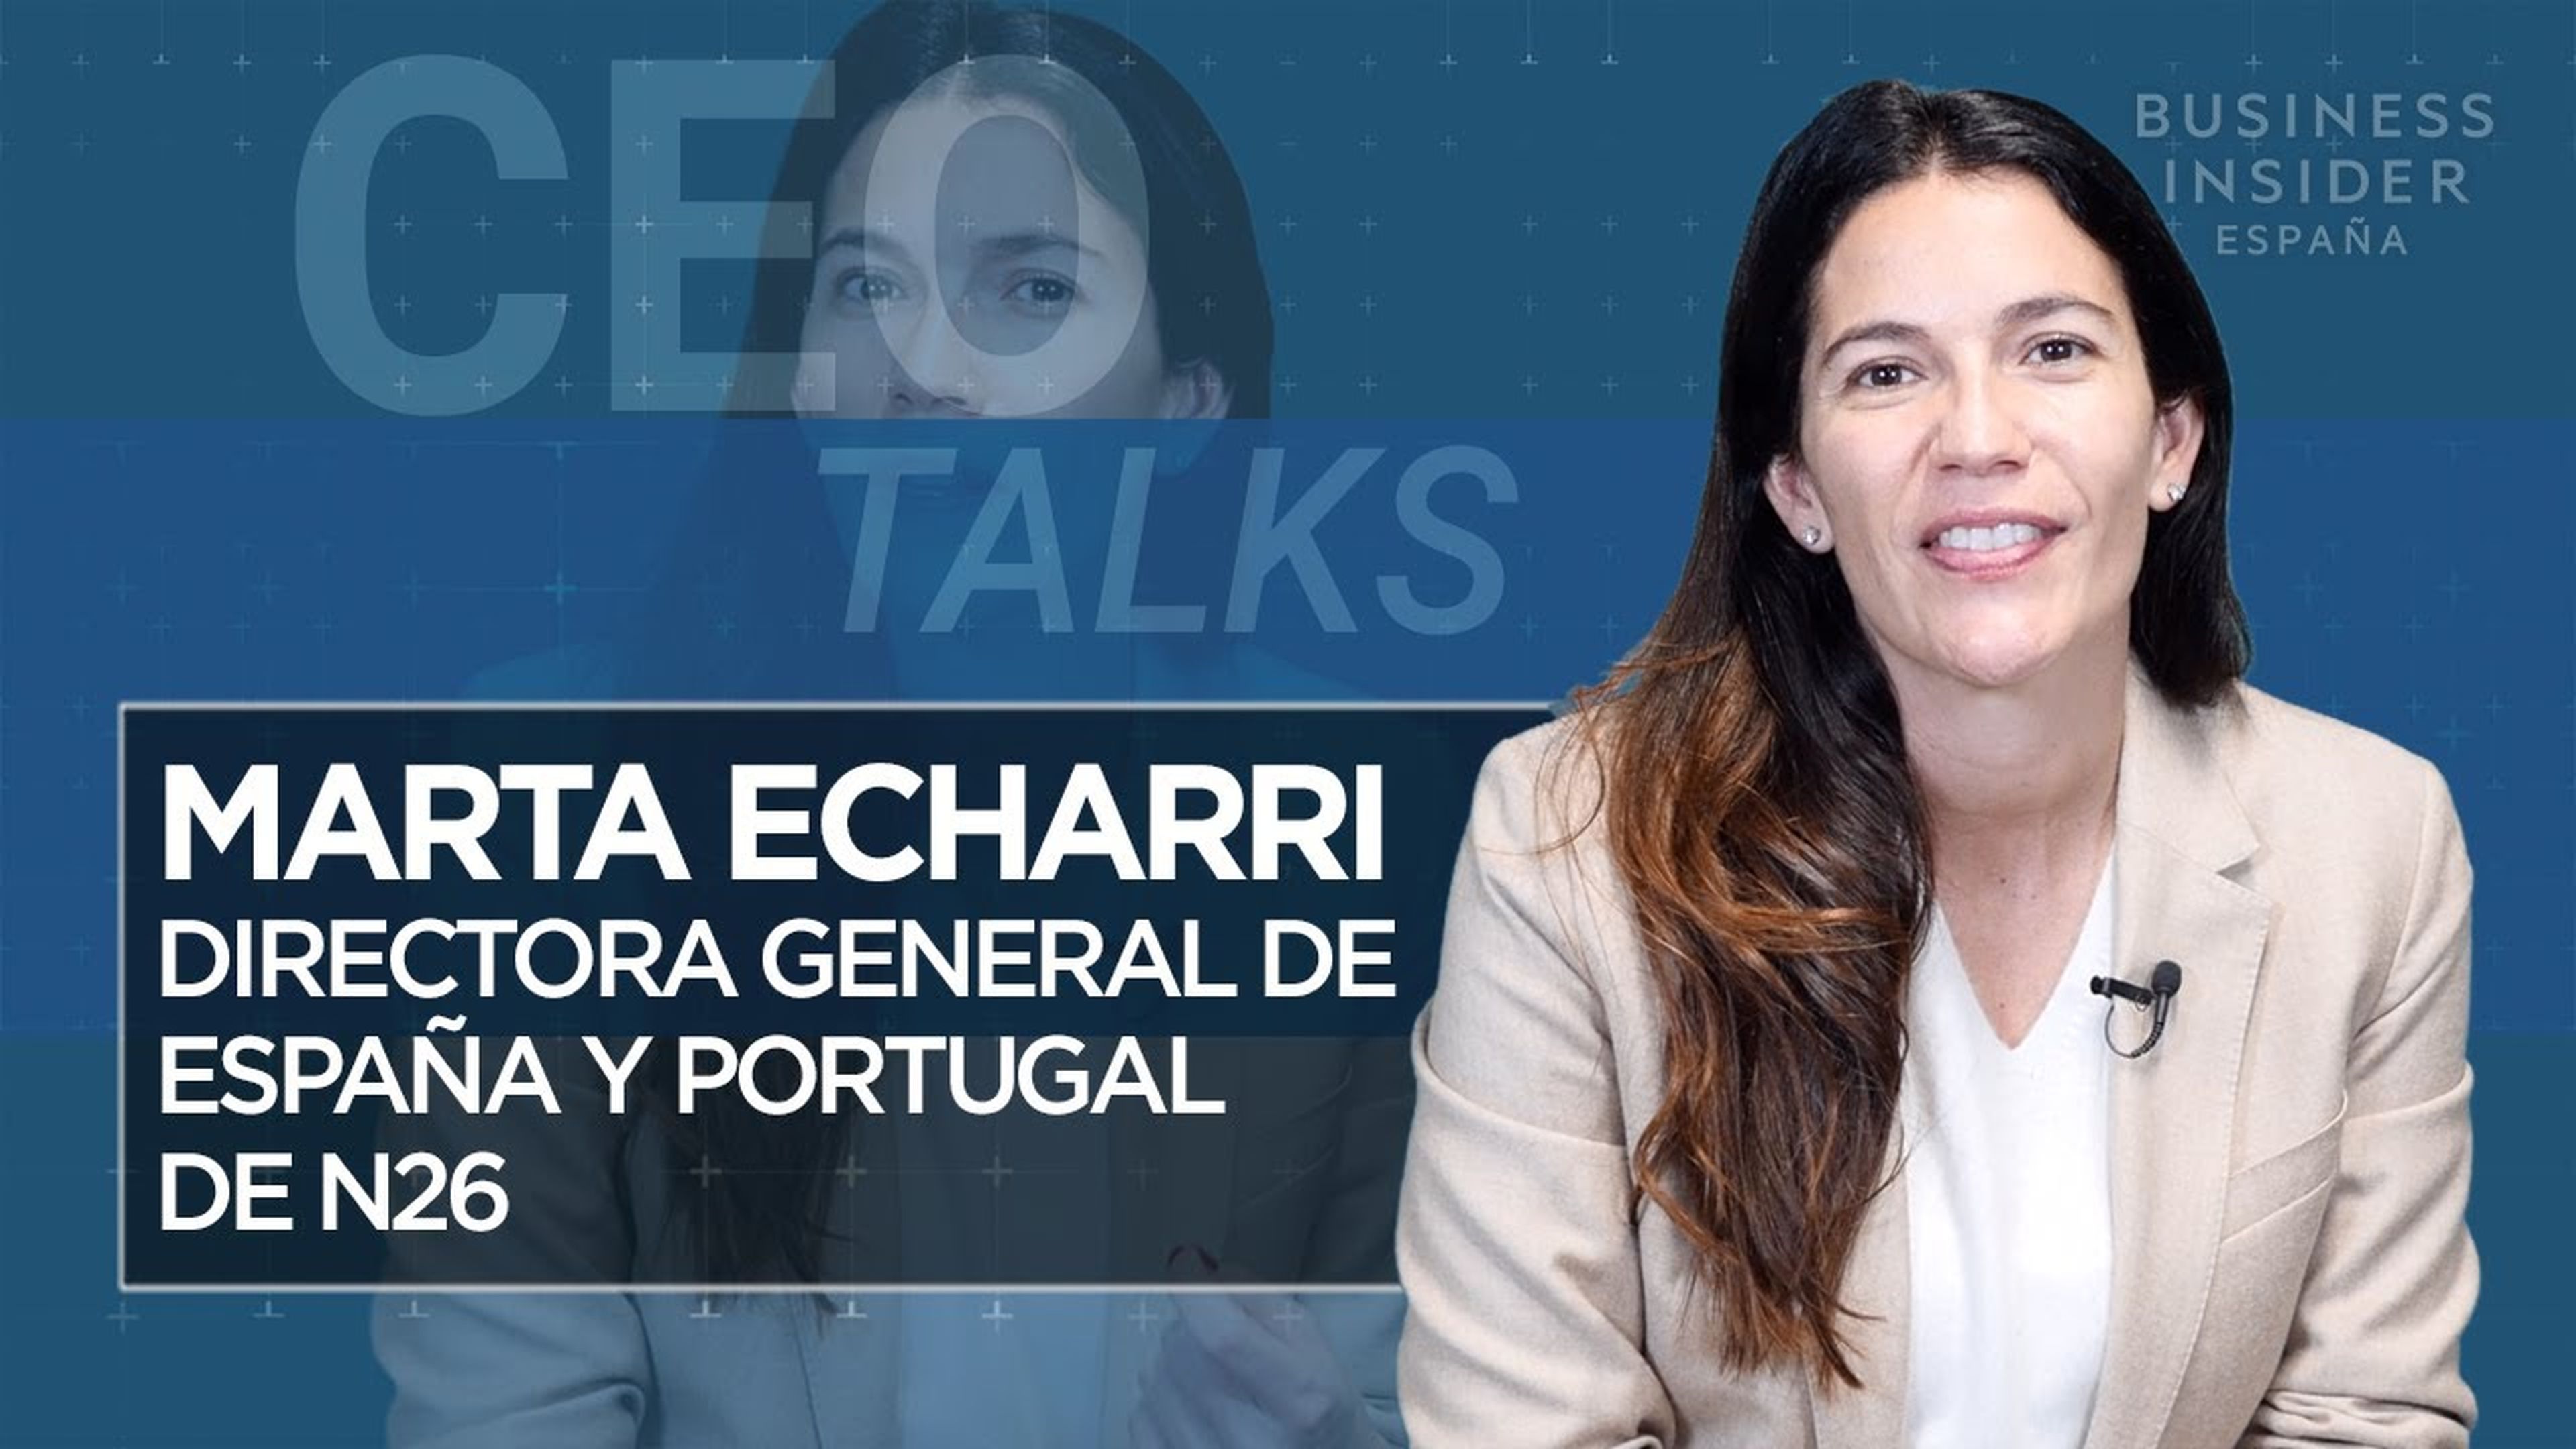 CEO TALKS MARTA ECHARRI